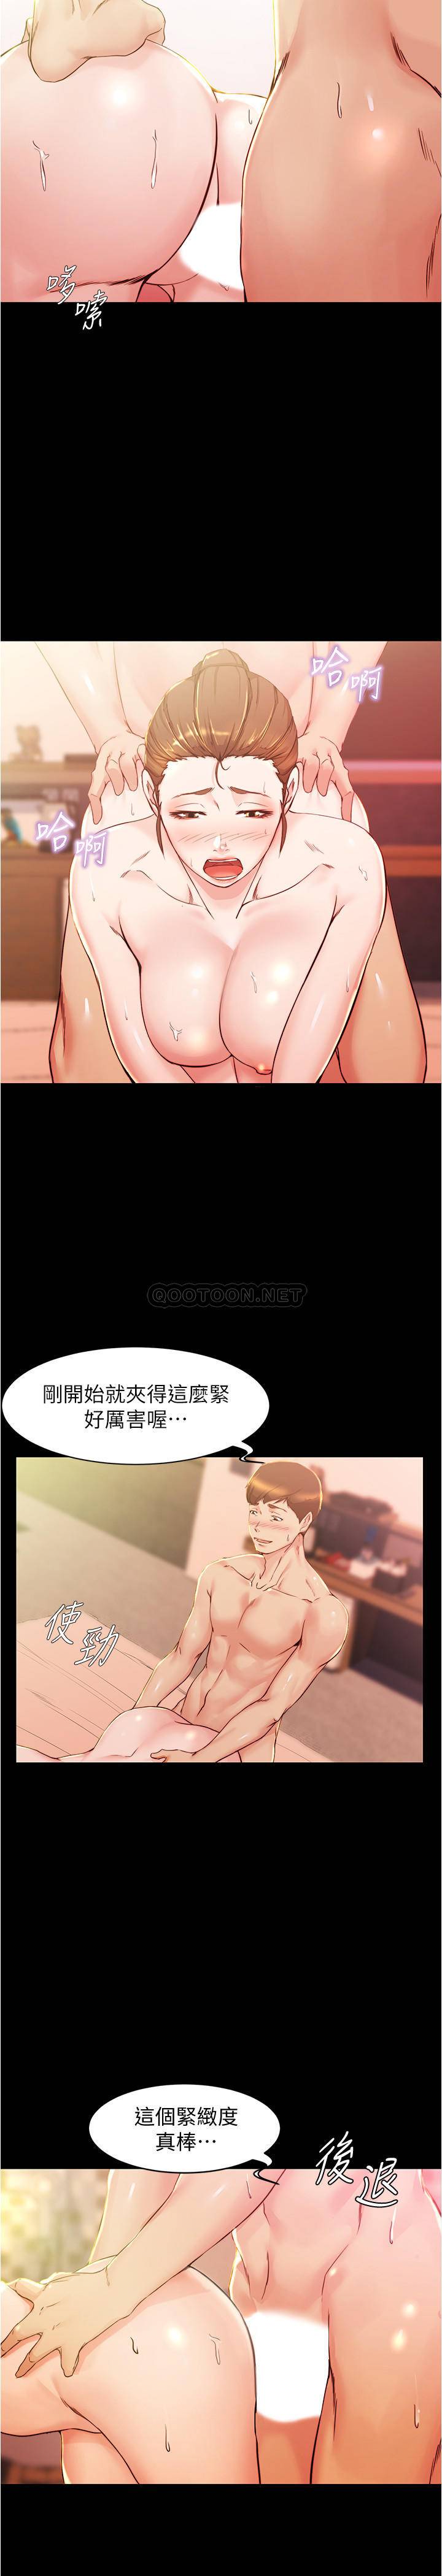 韩国污漫画 小褲褲筆記 第26话 - 为了更令人满意的性爱 5